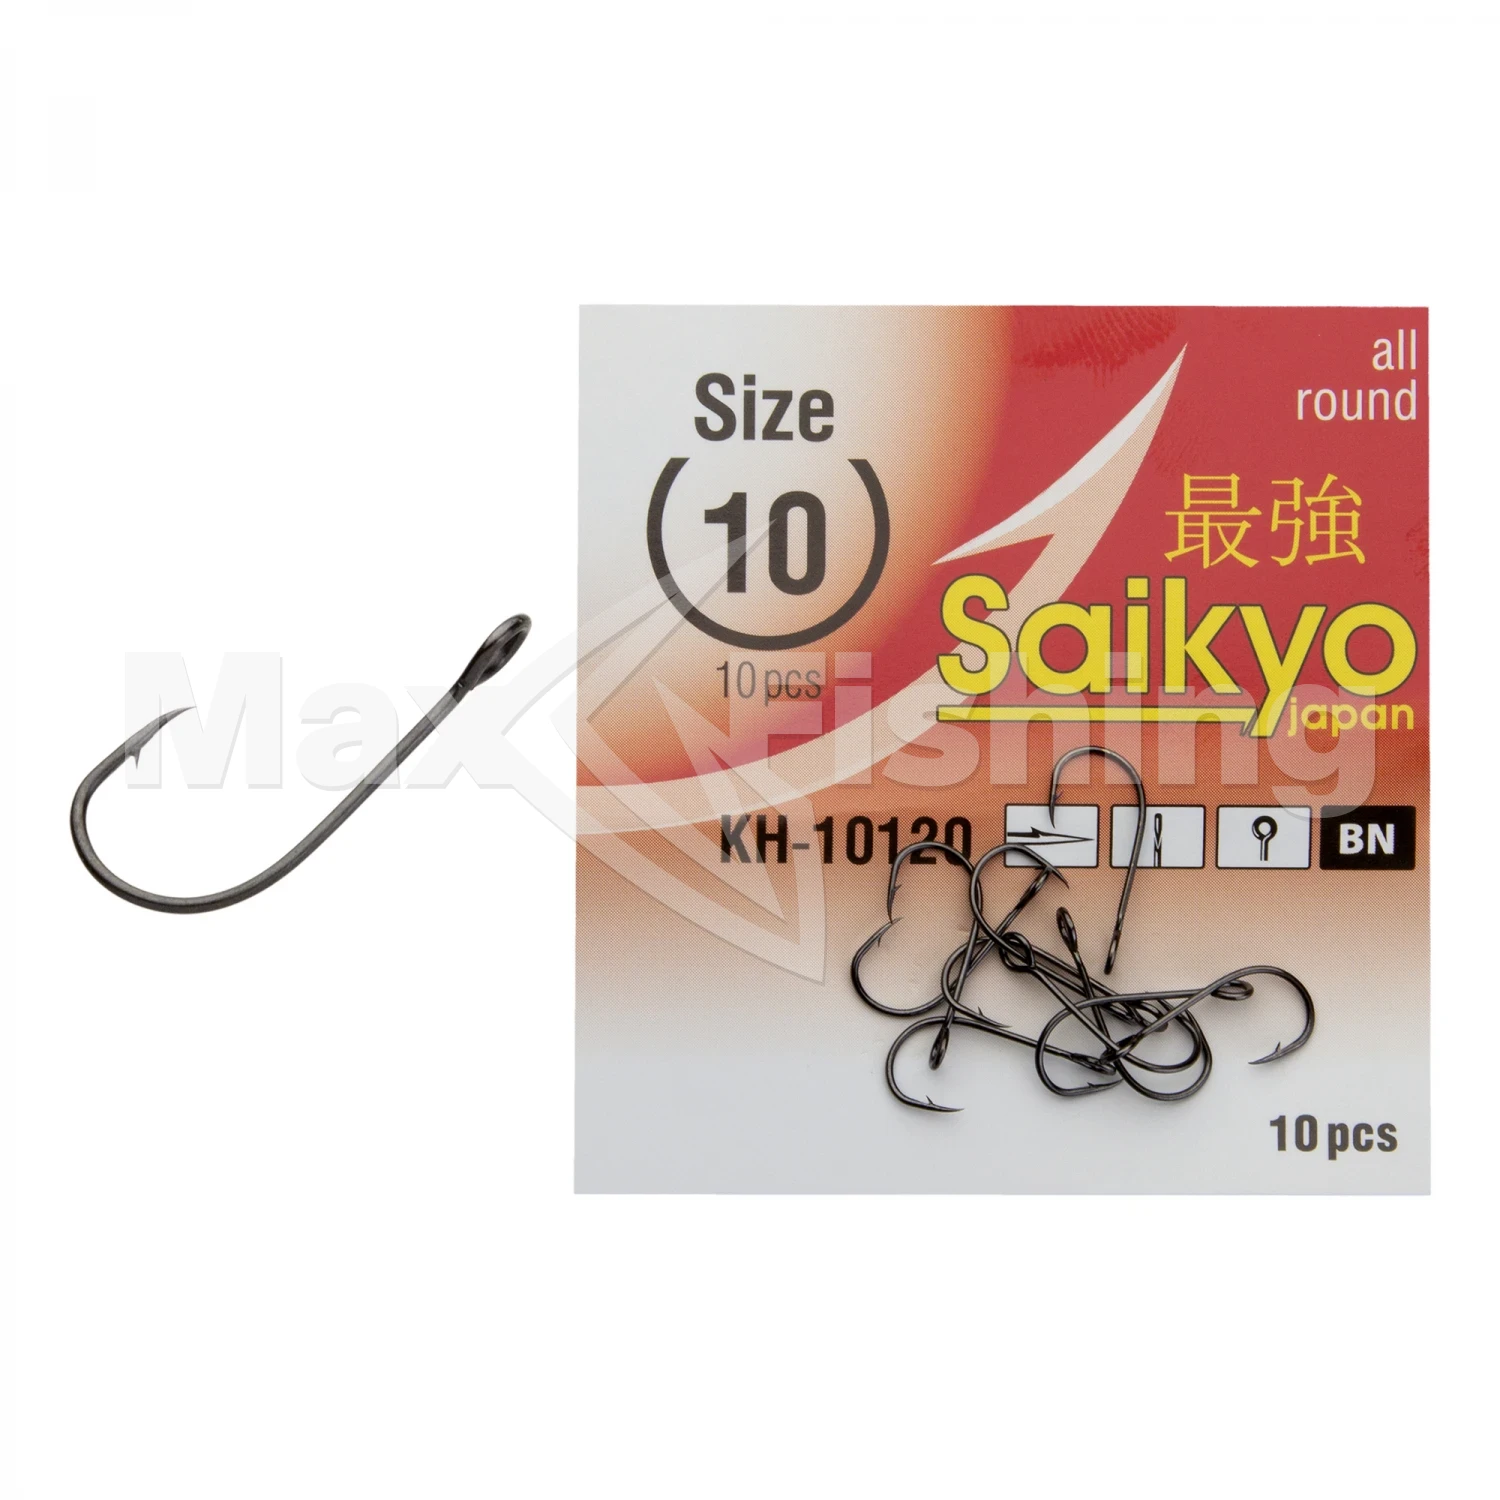 Крючок одинарный Saikyo Kh-10120 Bn #10 (10шт)